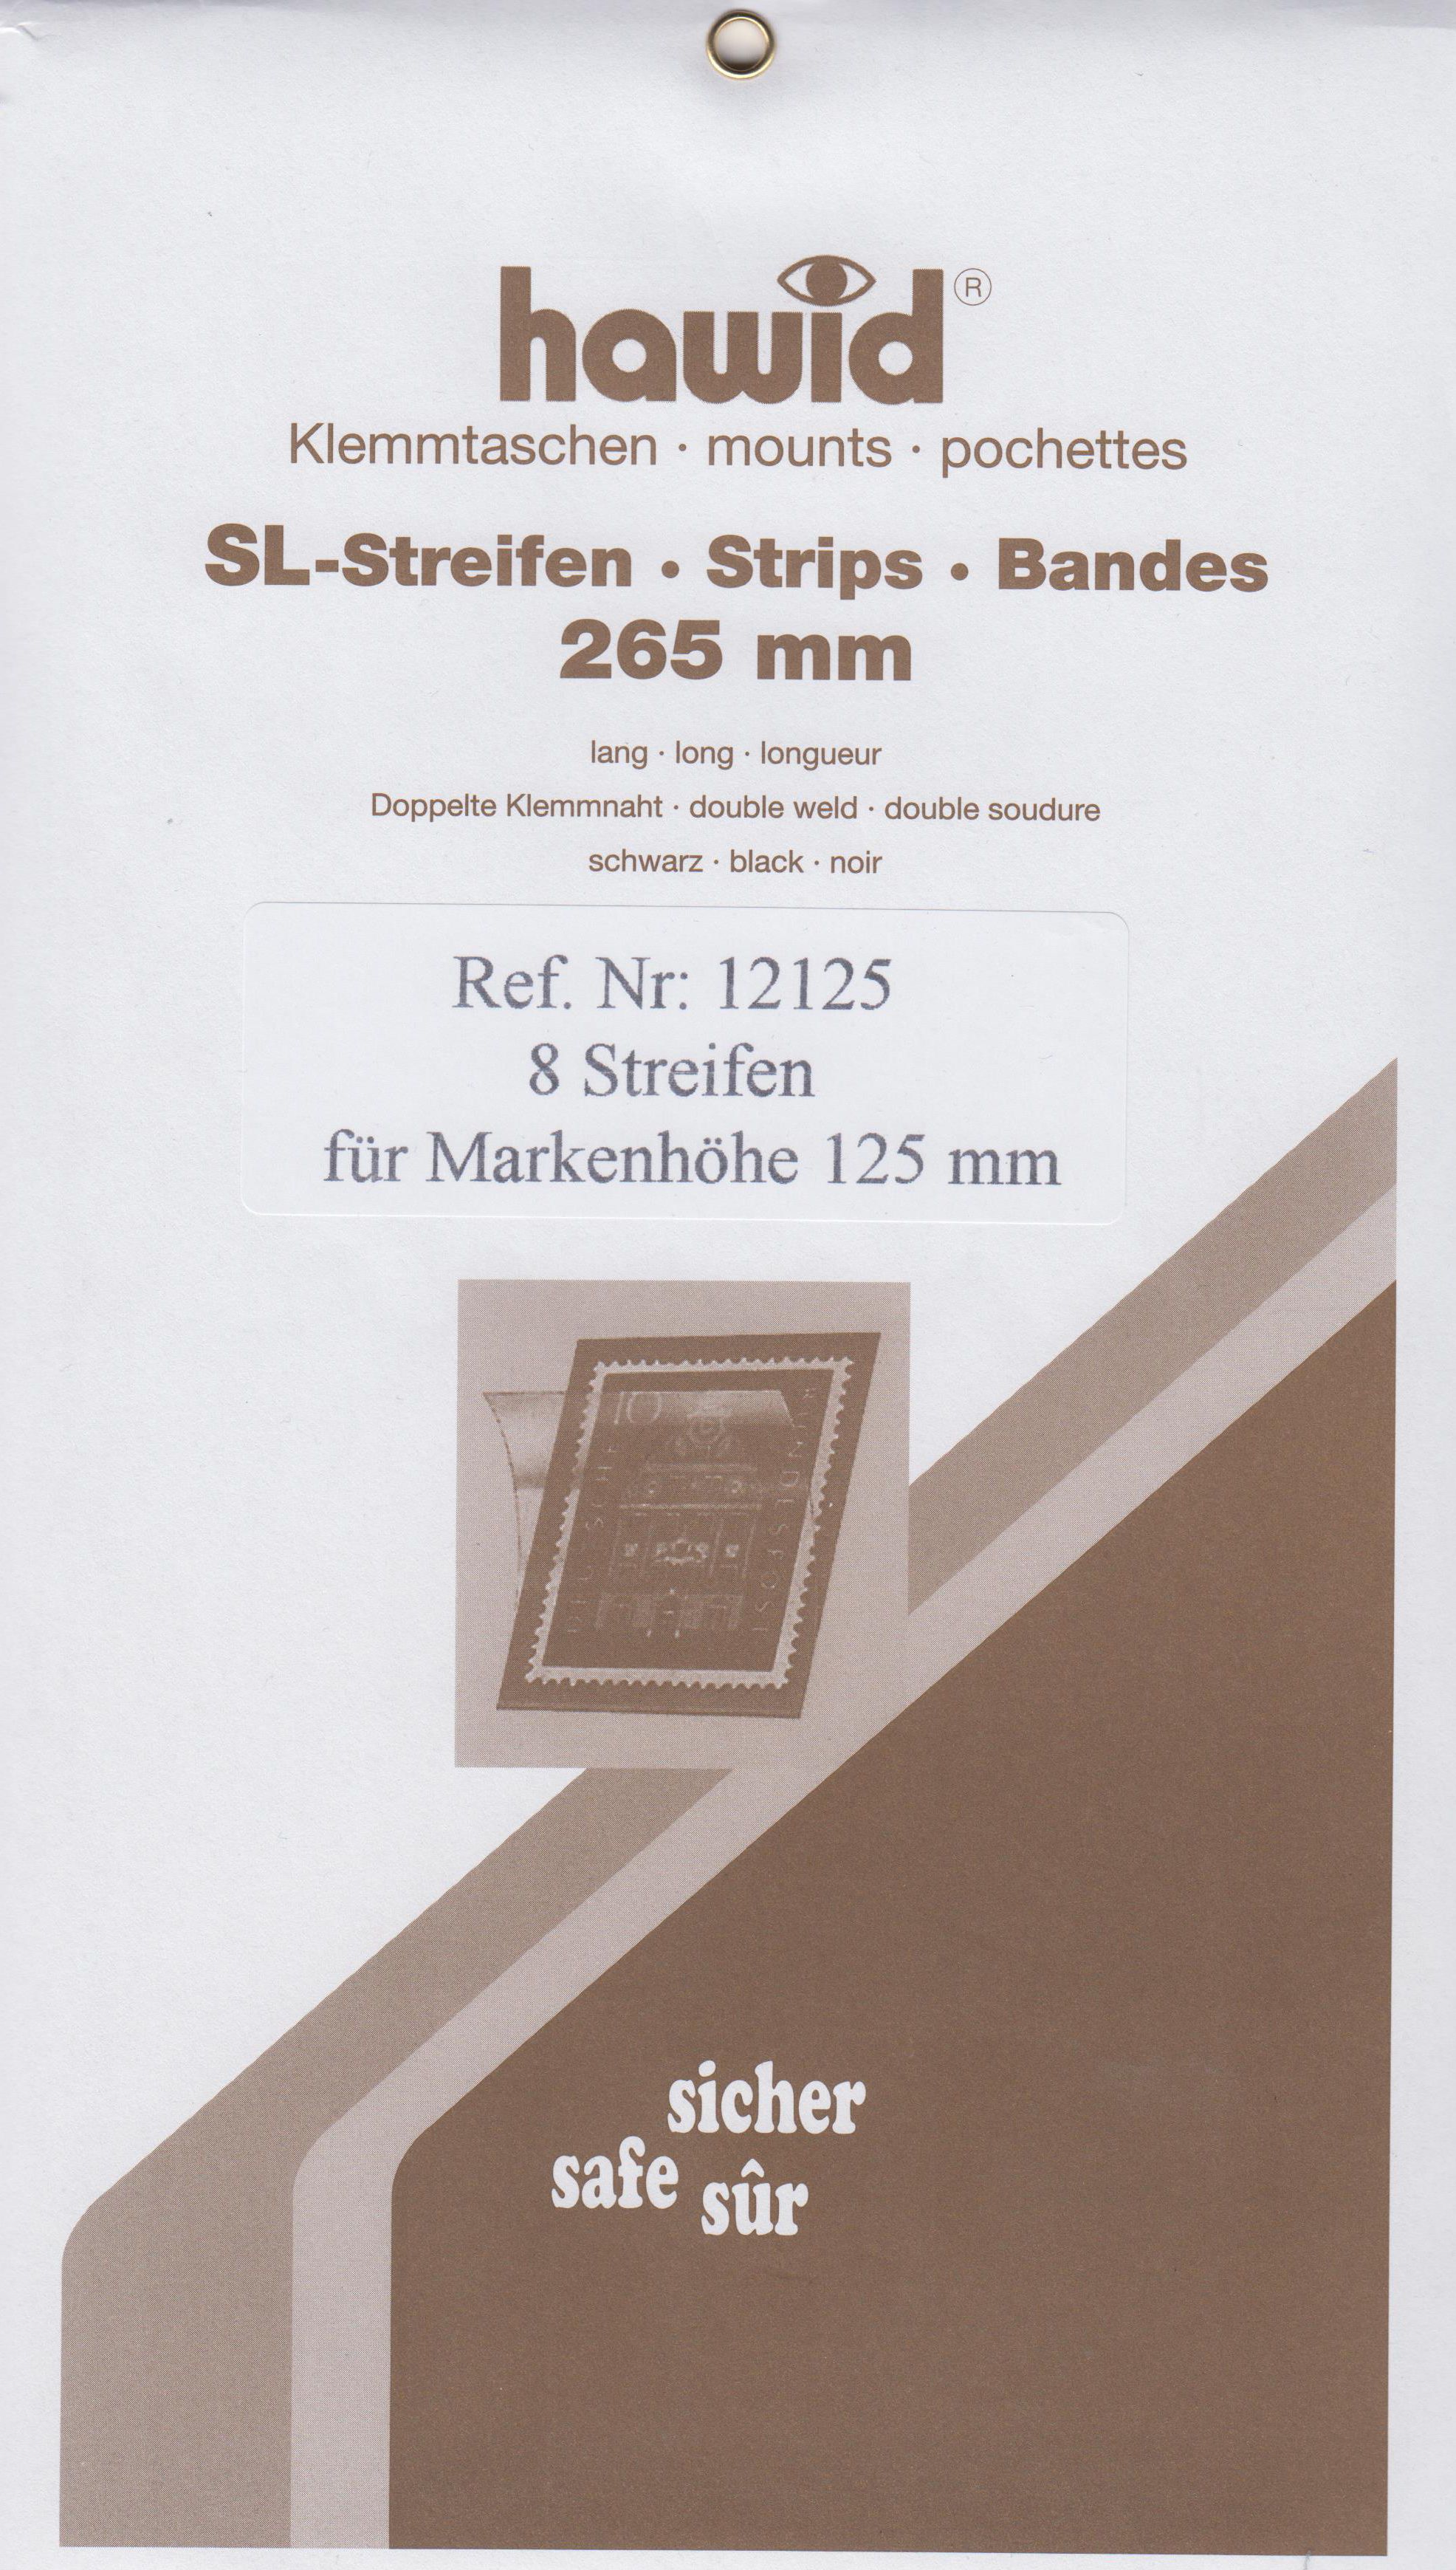 Hawid SL-Streifen Nr. 12125, 8 Streifen für Markenhöhe 125 mm, schwarz